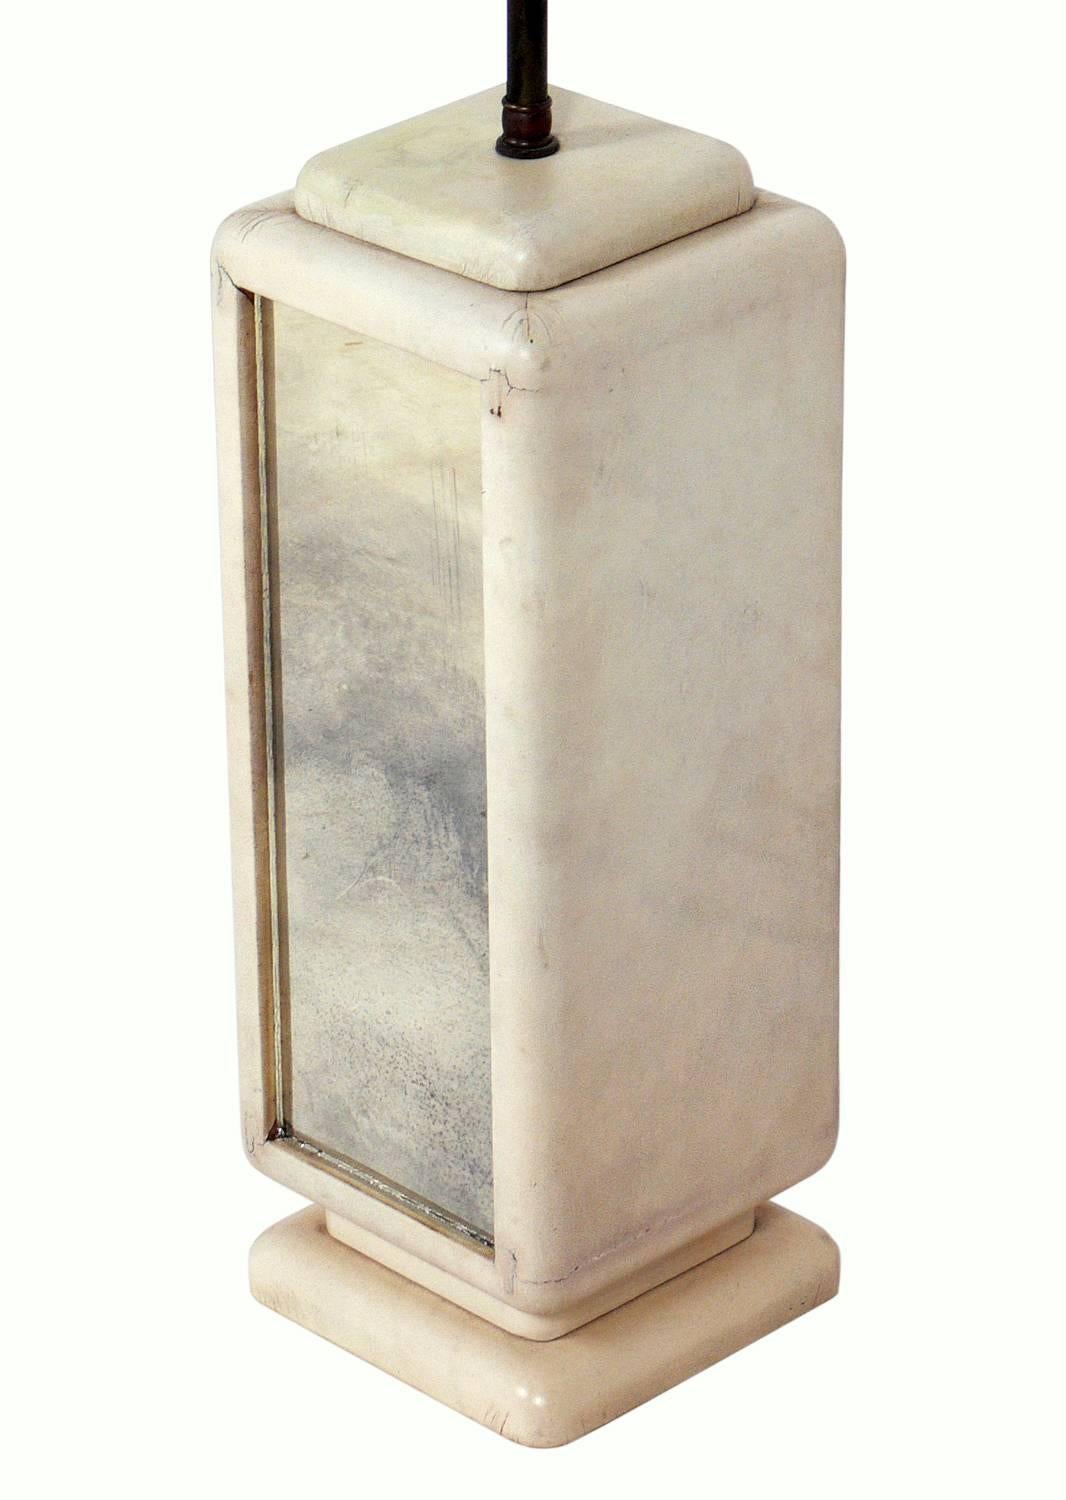 Lampe Hollywood Regency en cuir et miroir vieilli, américaine, vers les années 1940. Le cuir blanc d'origine s'est fondu en une chaude couleur ivoire. Recâblé et prêt à être utilisé